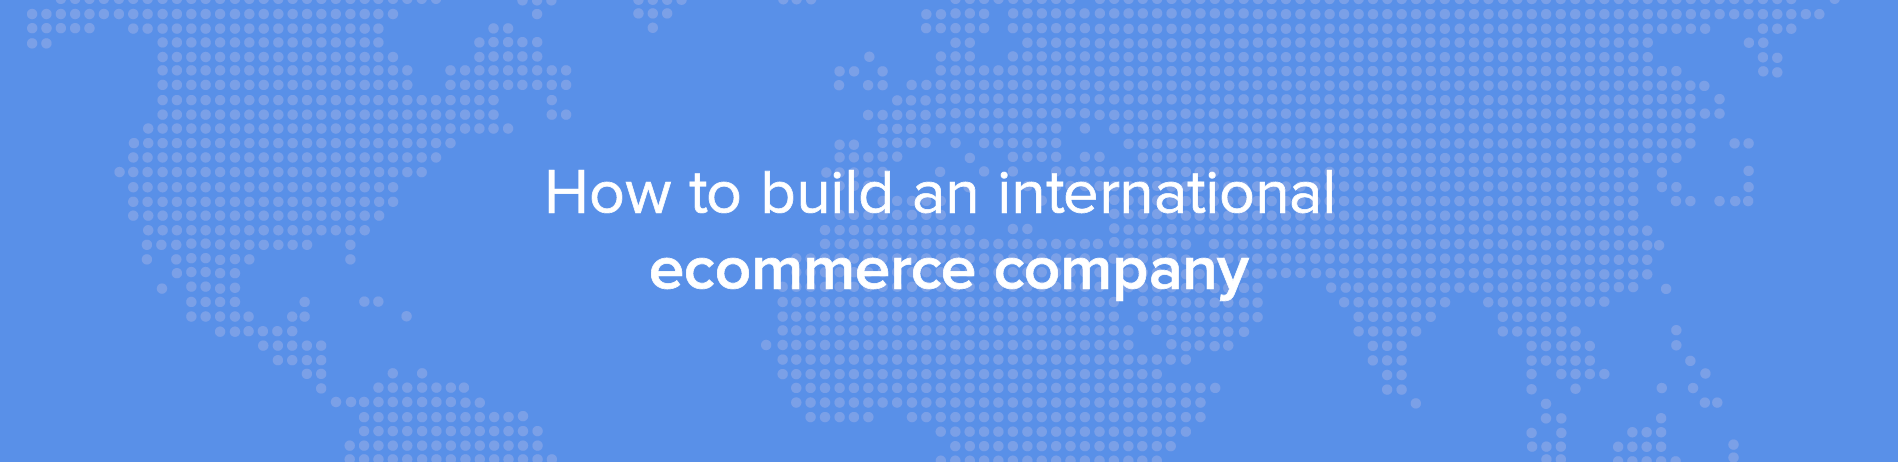 Wie man ein internationales E-Commerce-Unternehmen aufbaut